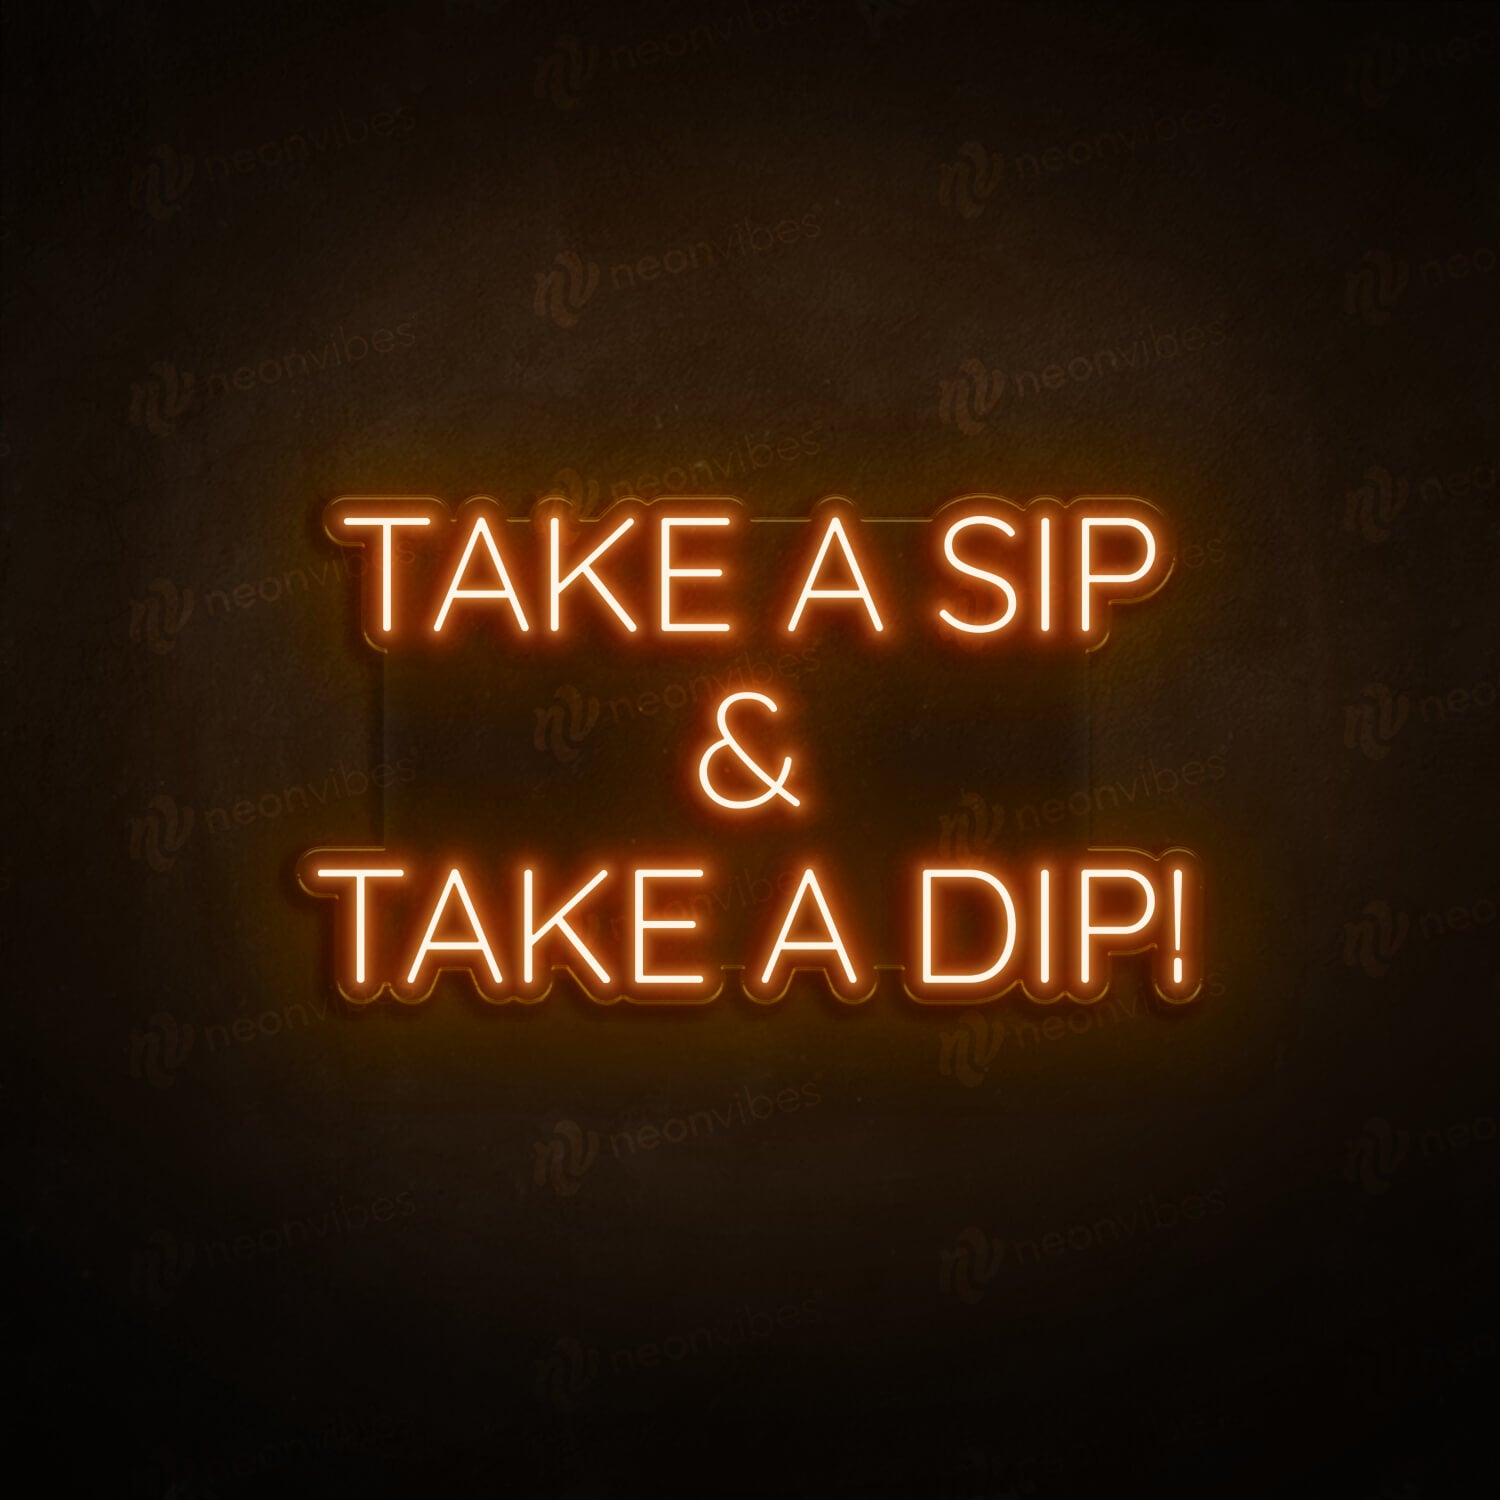 take a sip & take a dip